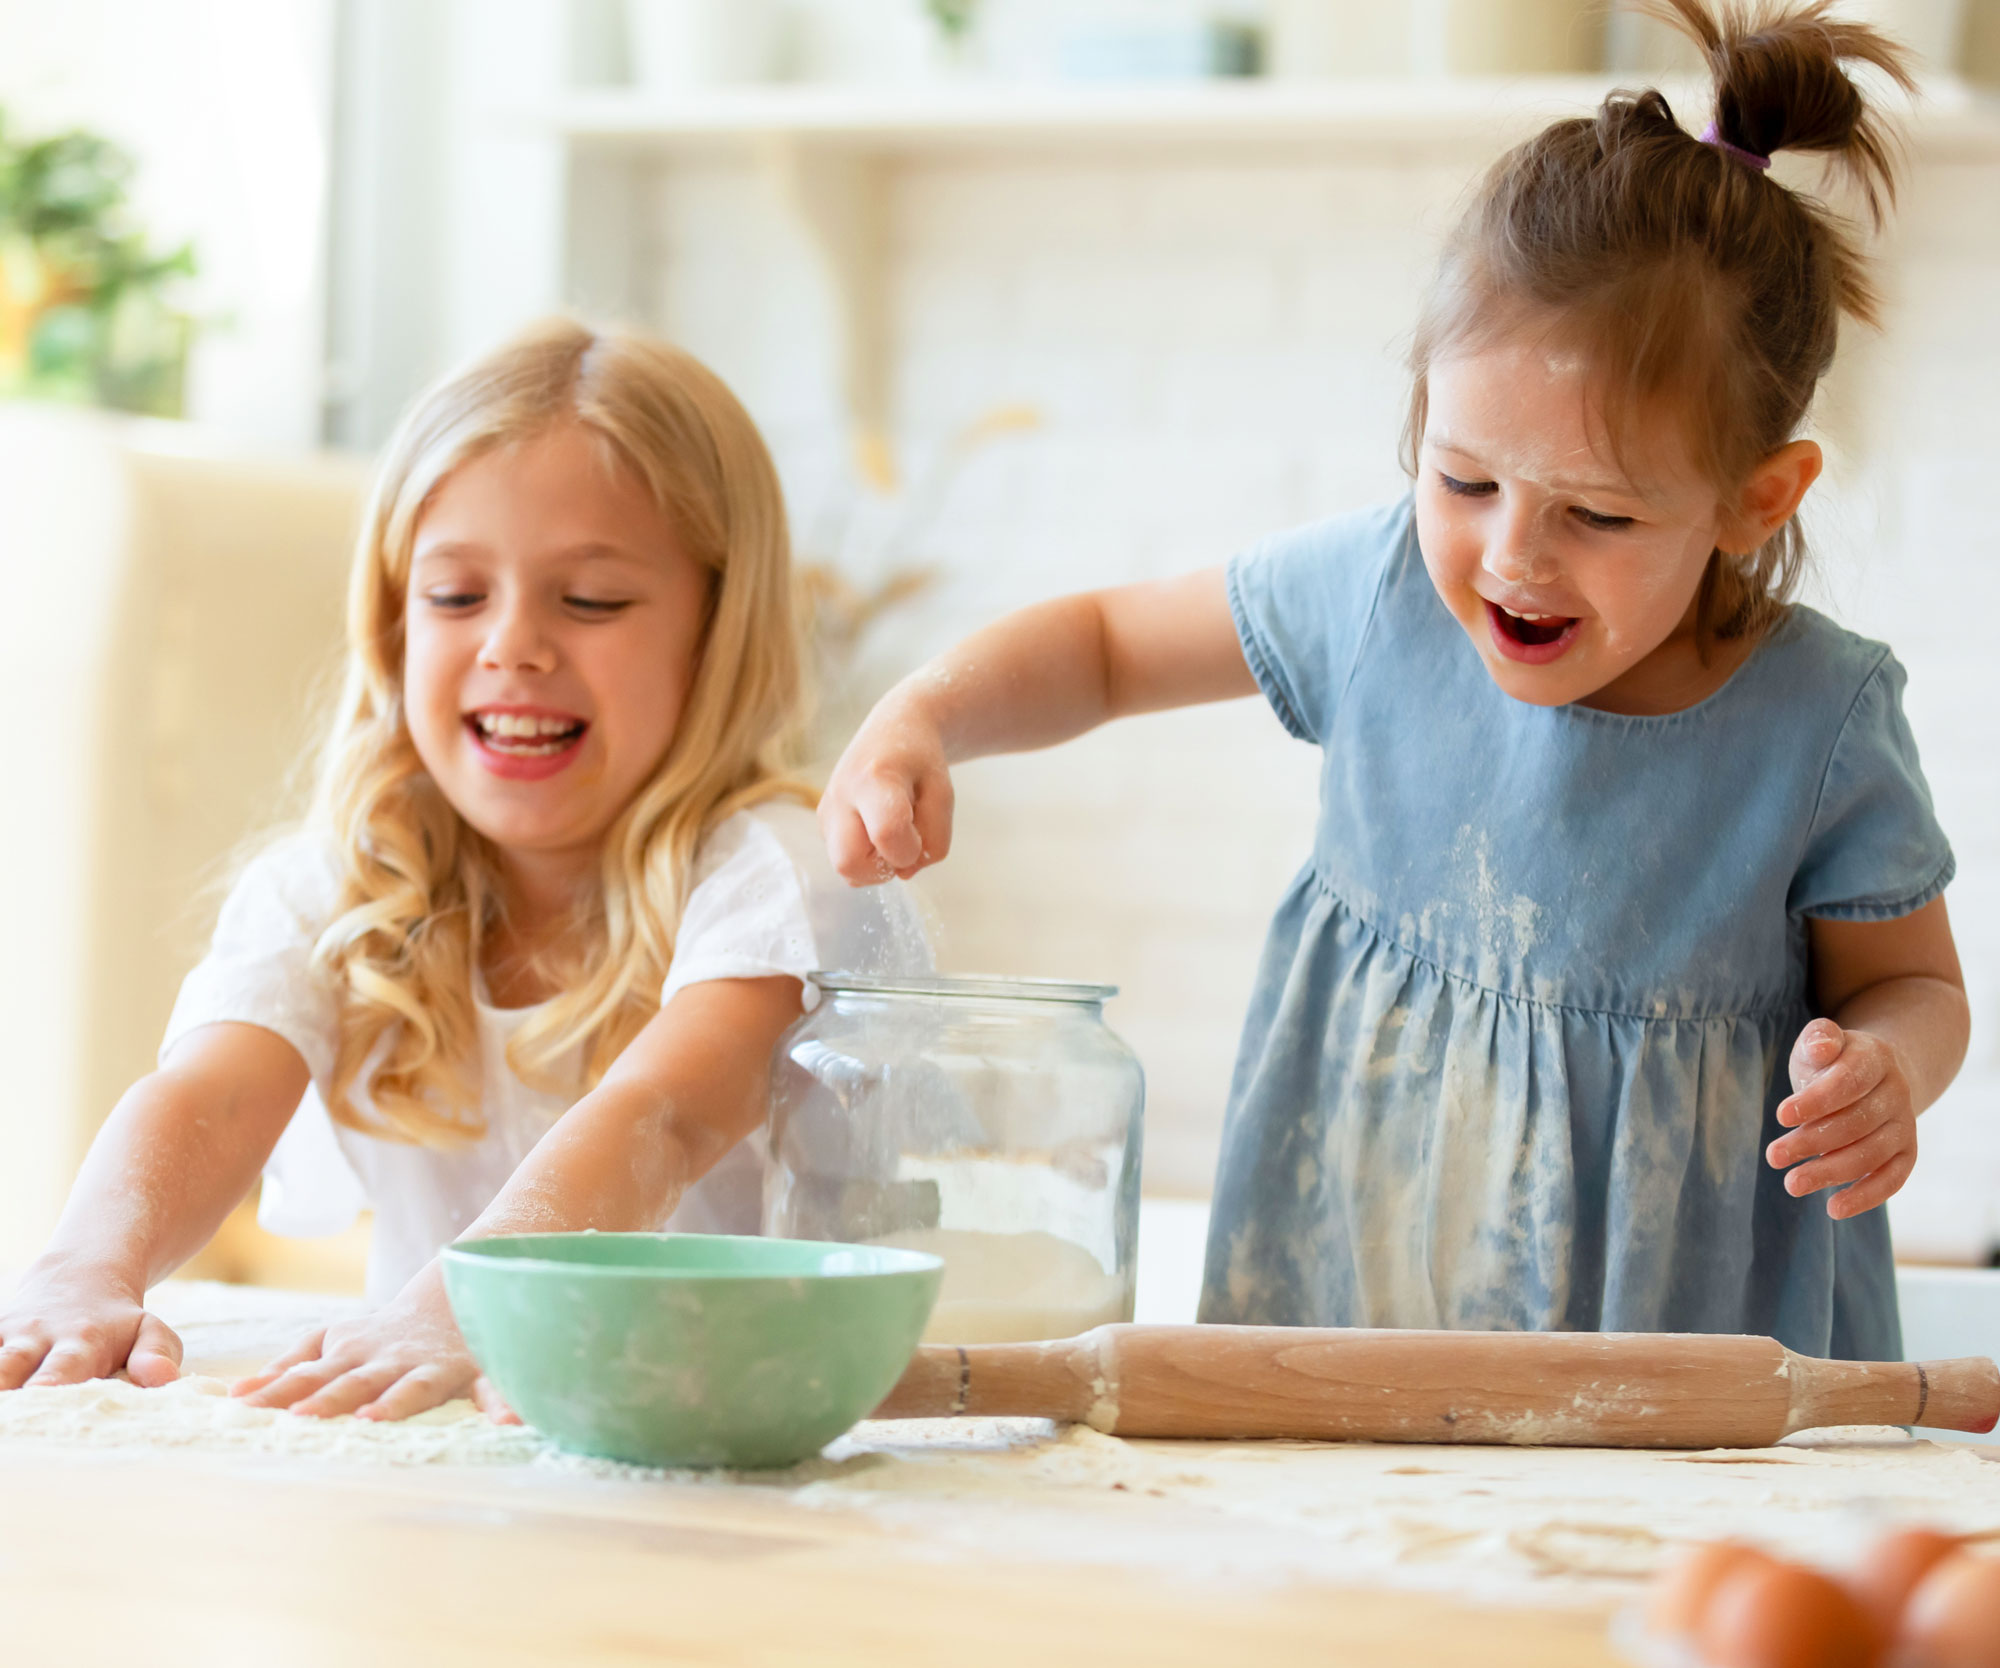 Children making food in a clean kitchen